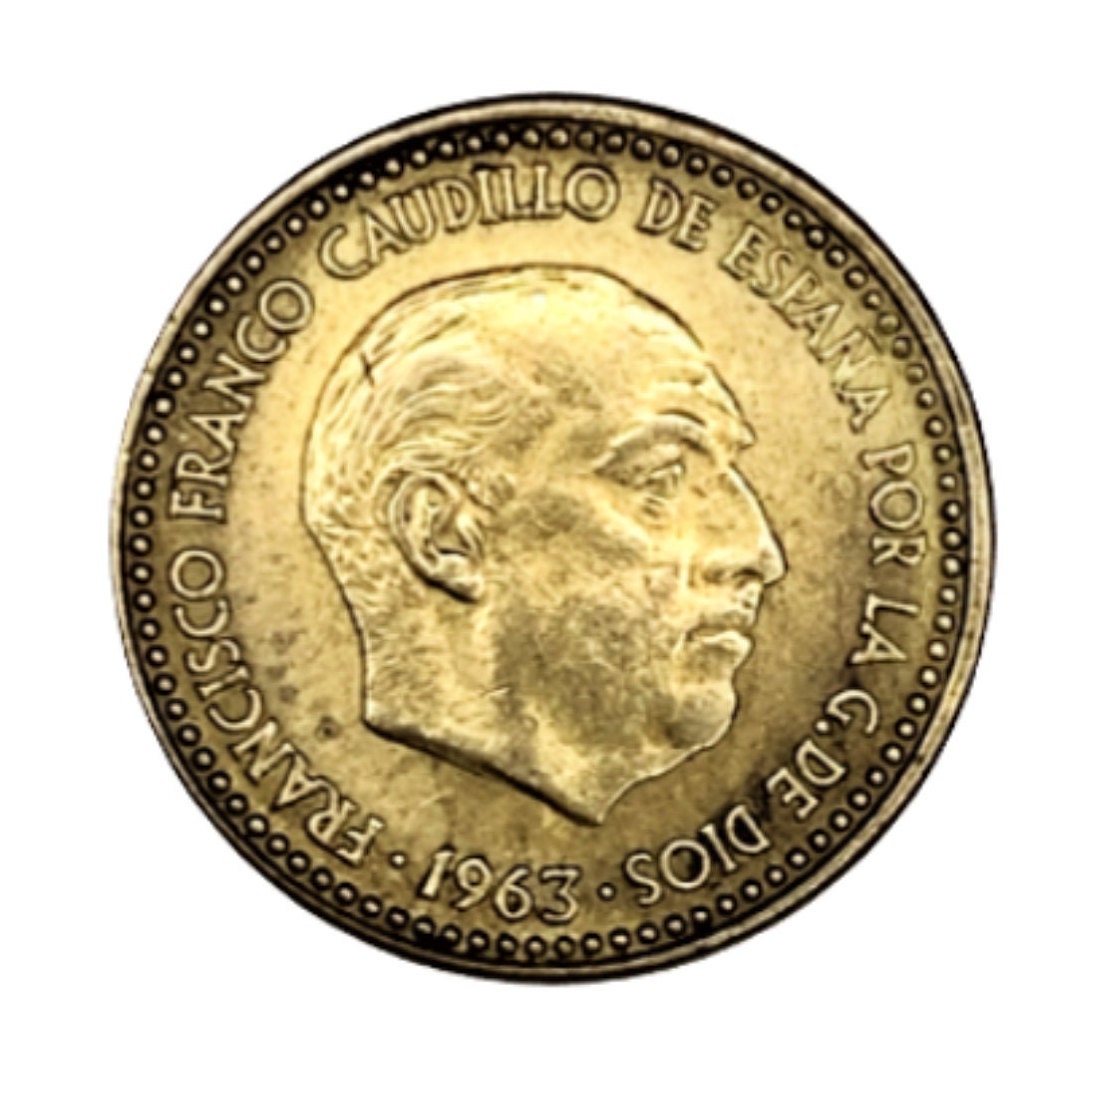 ITALY 1 Euro IL MIO PRIMO EURO 1997 feu_597105 Euro coins